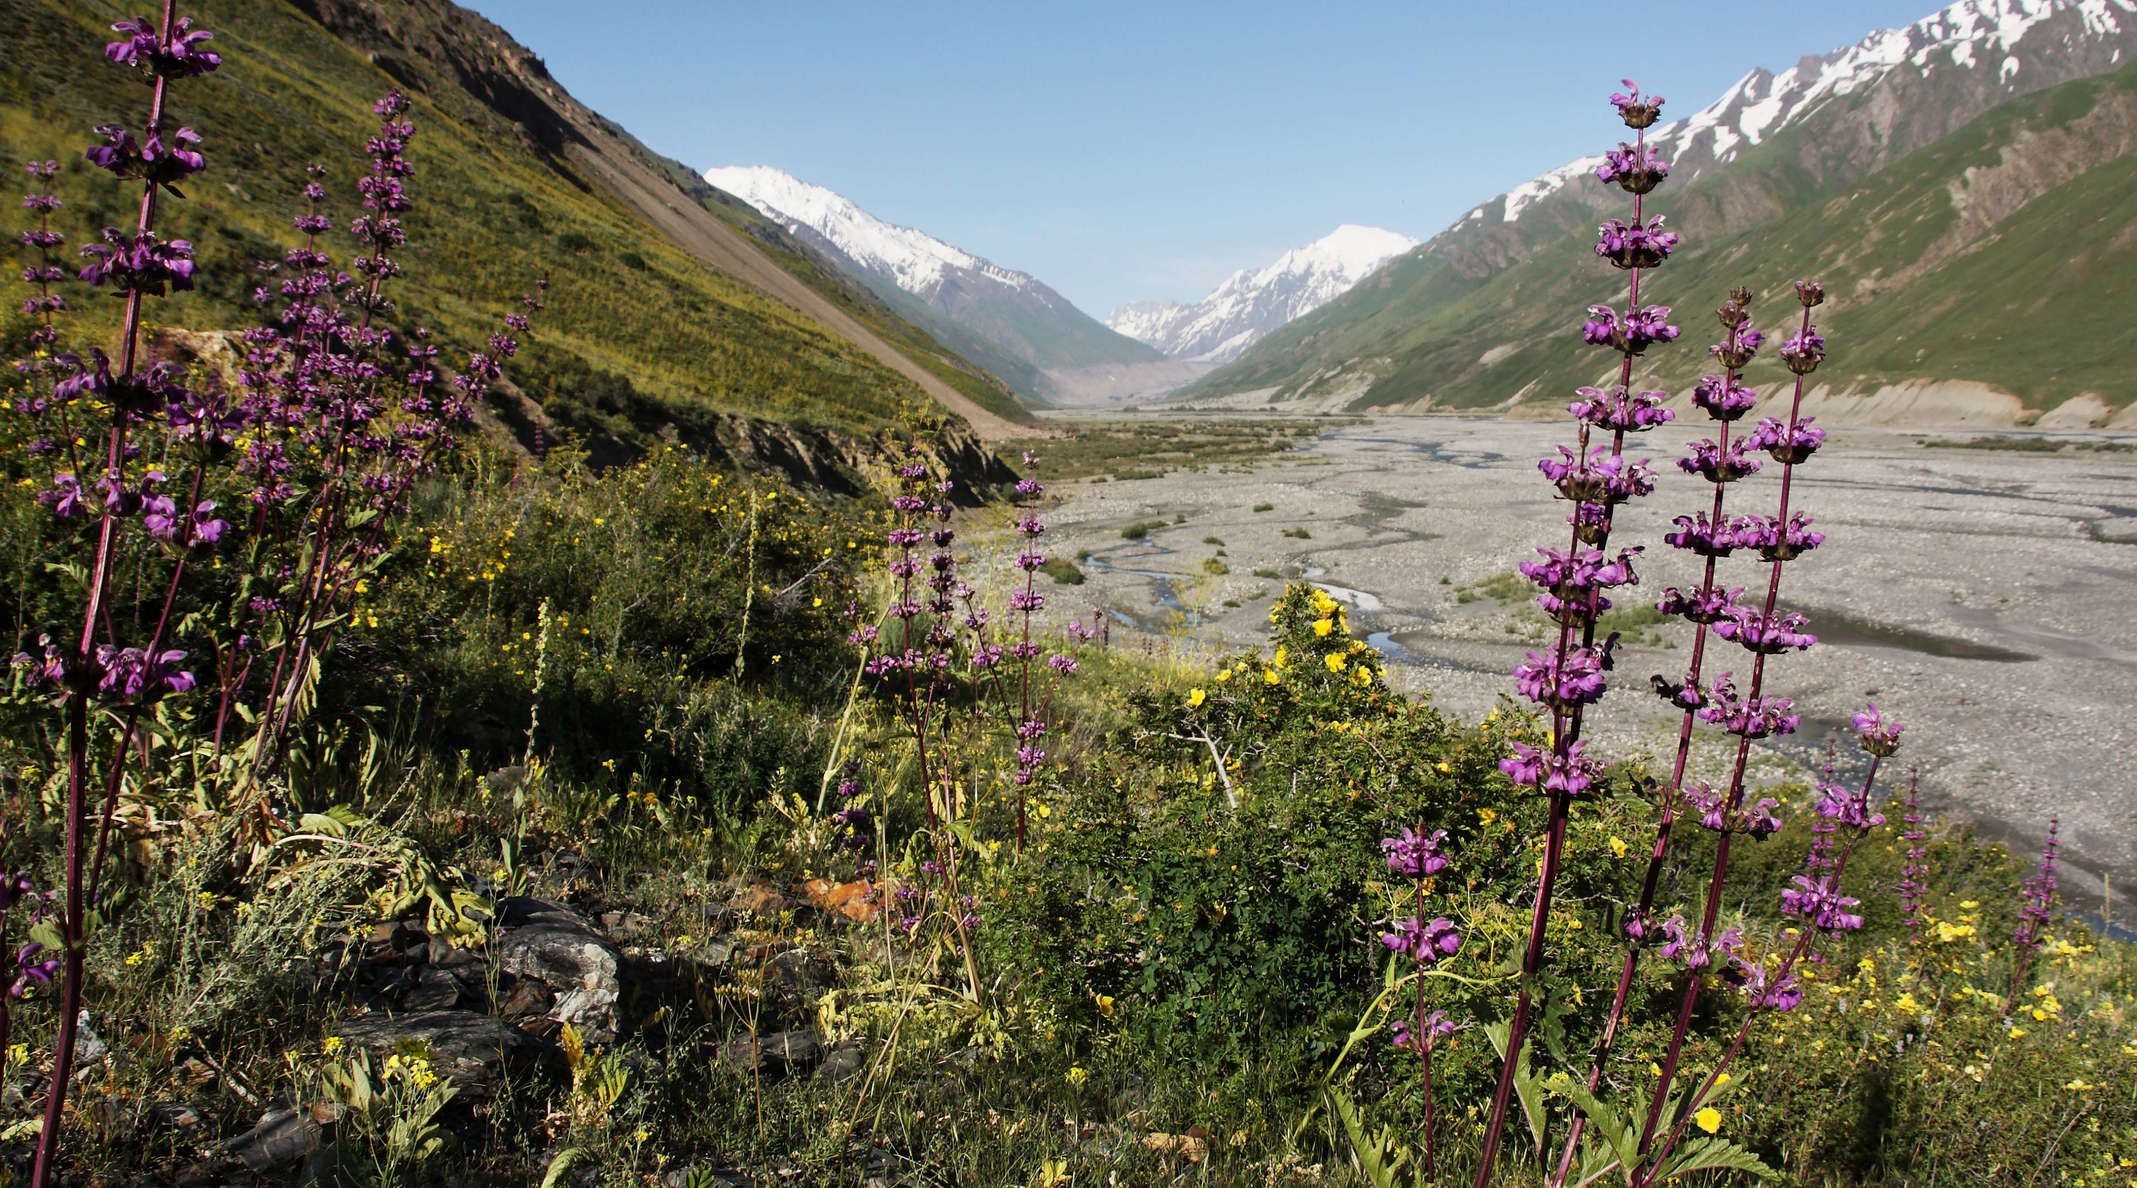 Upper Zarafshan Valley  |  Alpine vegetation